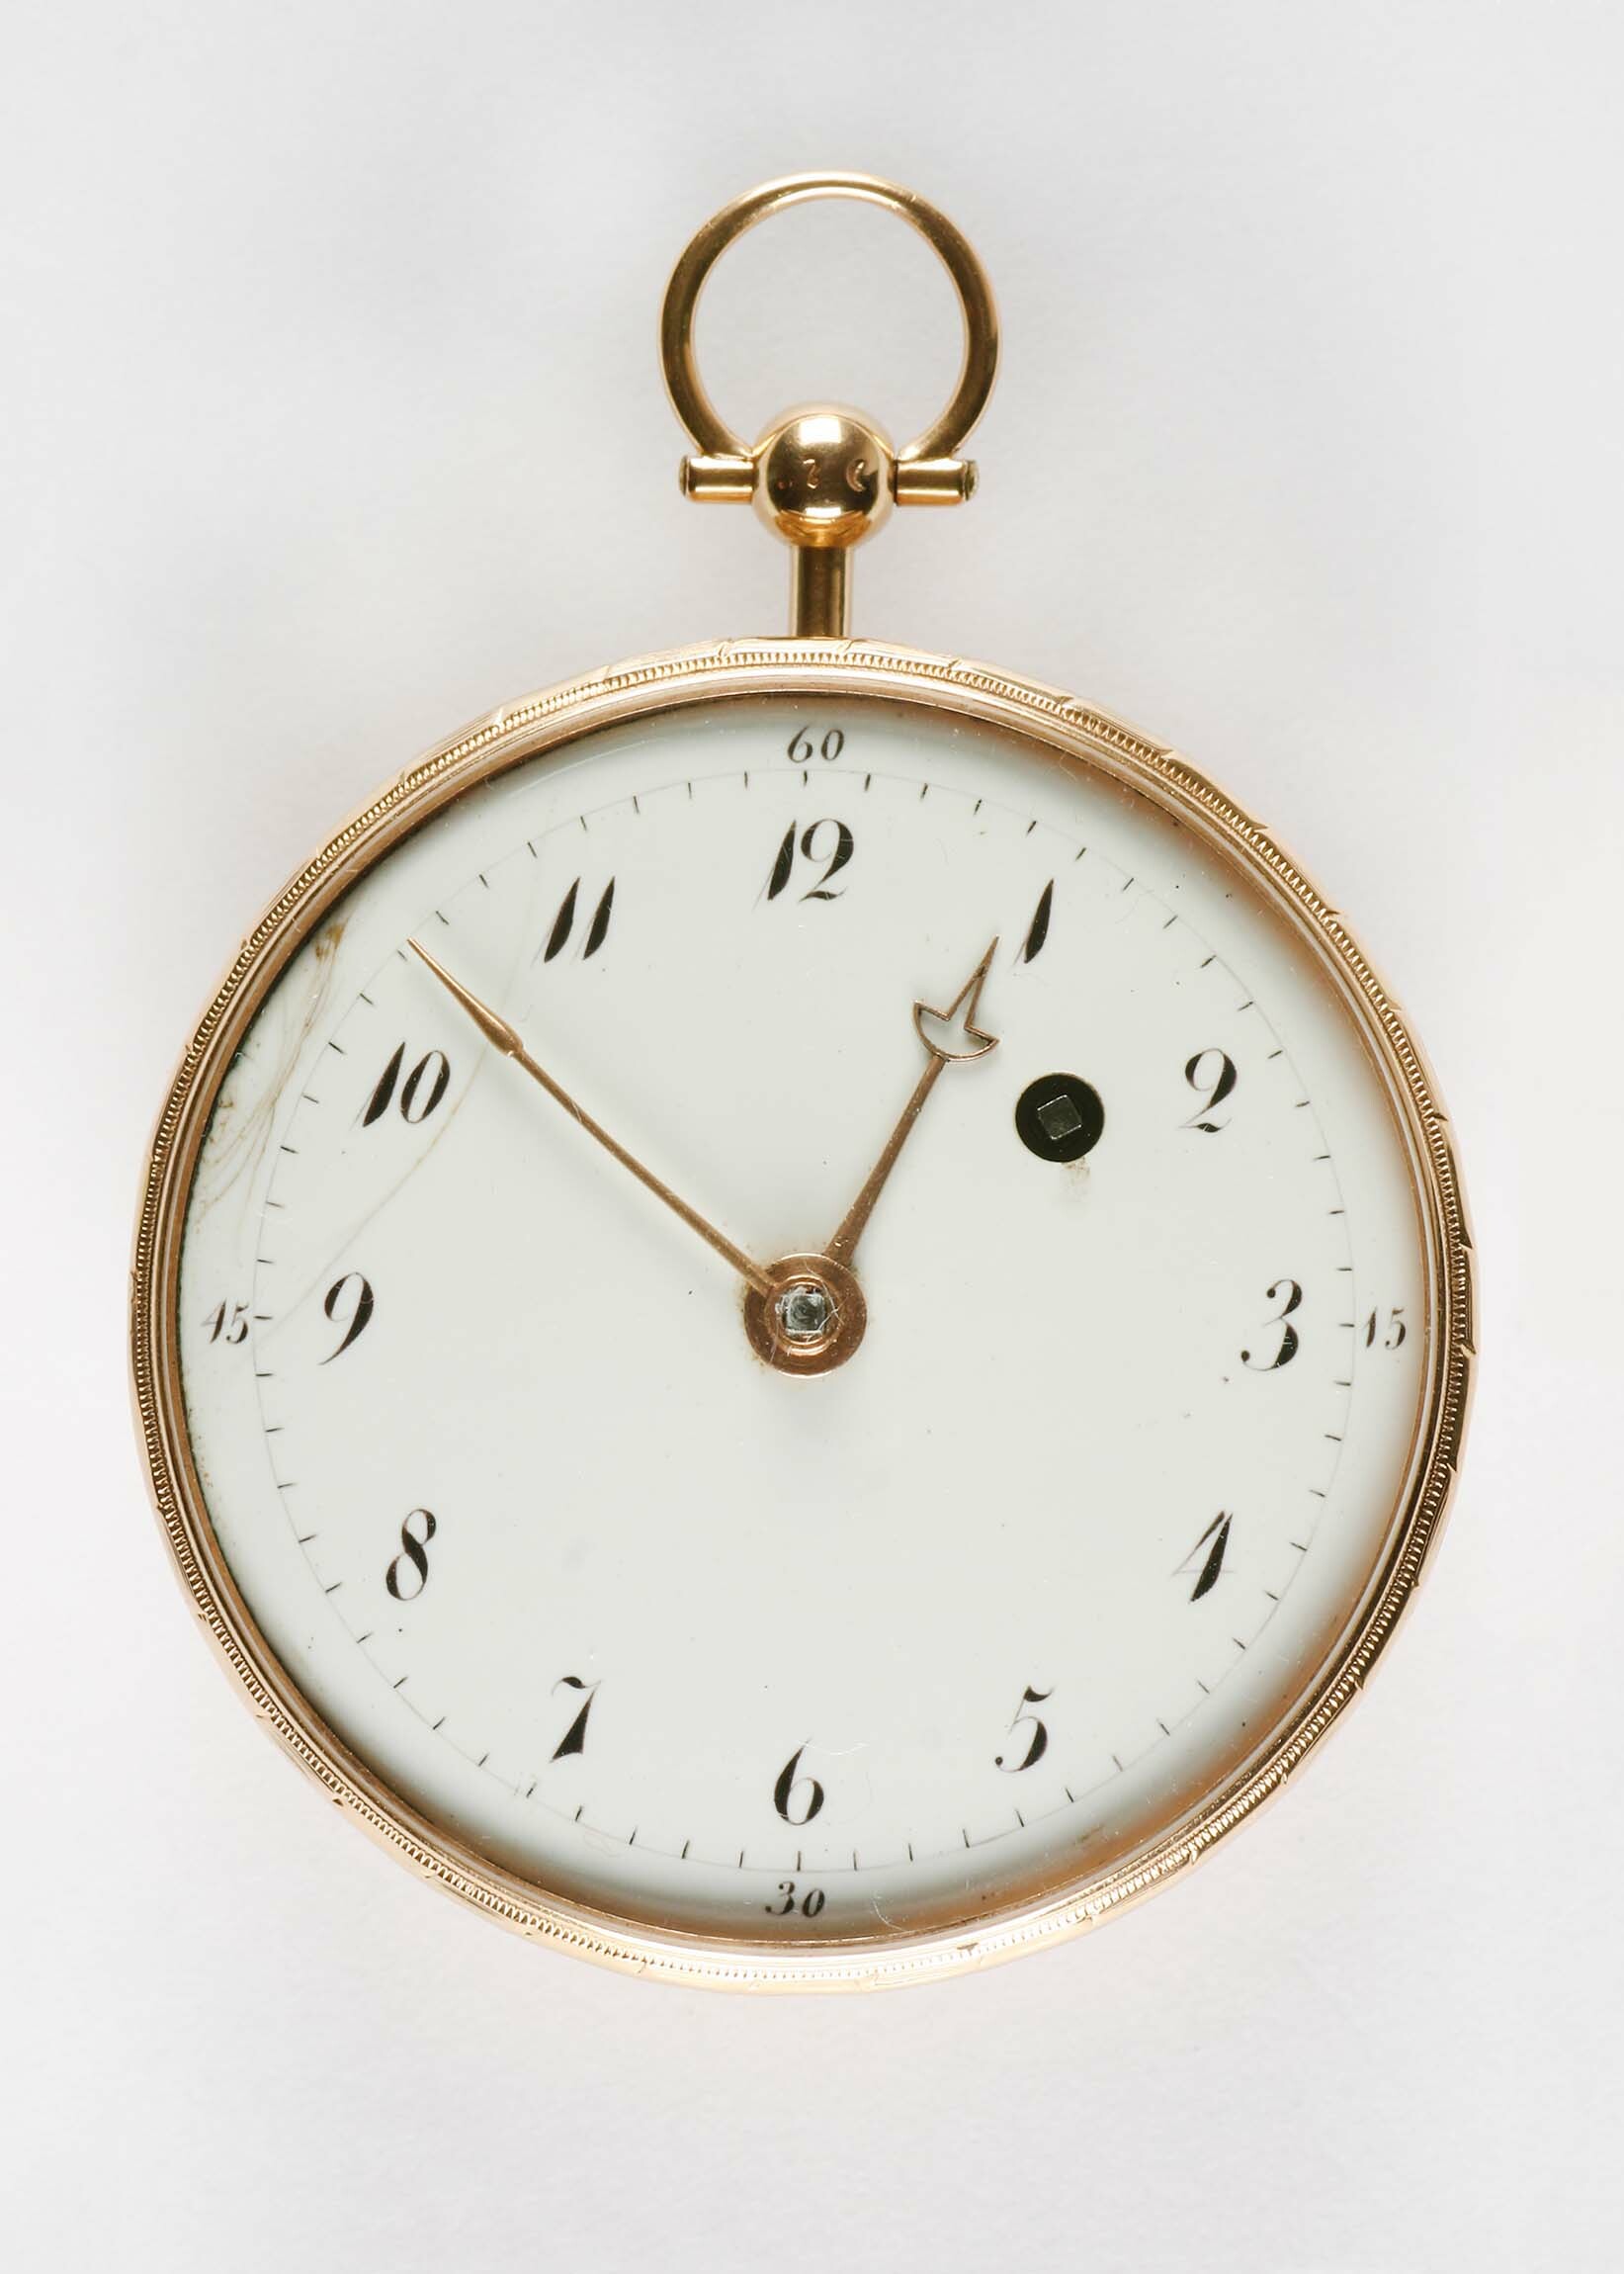 Taschenuhr, Moilliet, Genf, um 1800 (Deutsches Uhrenmuseum CC BY-SA)